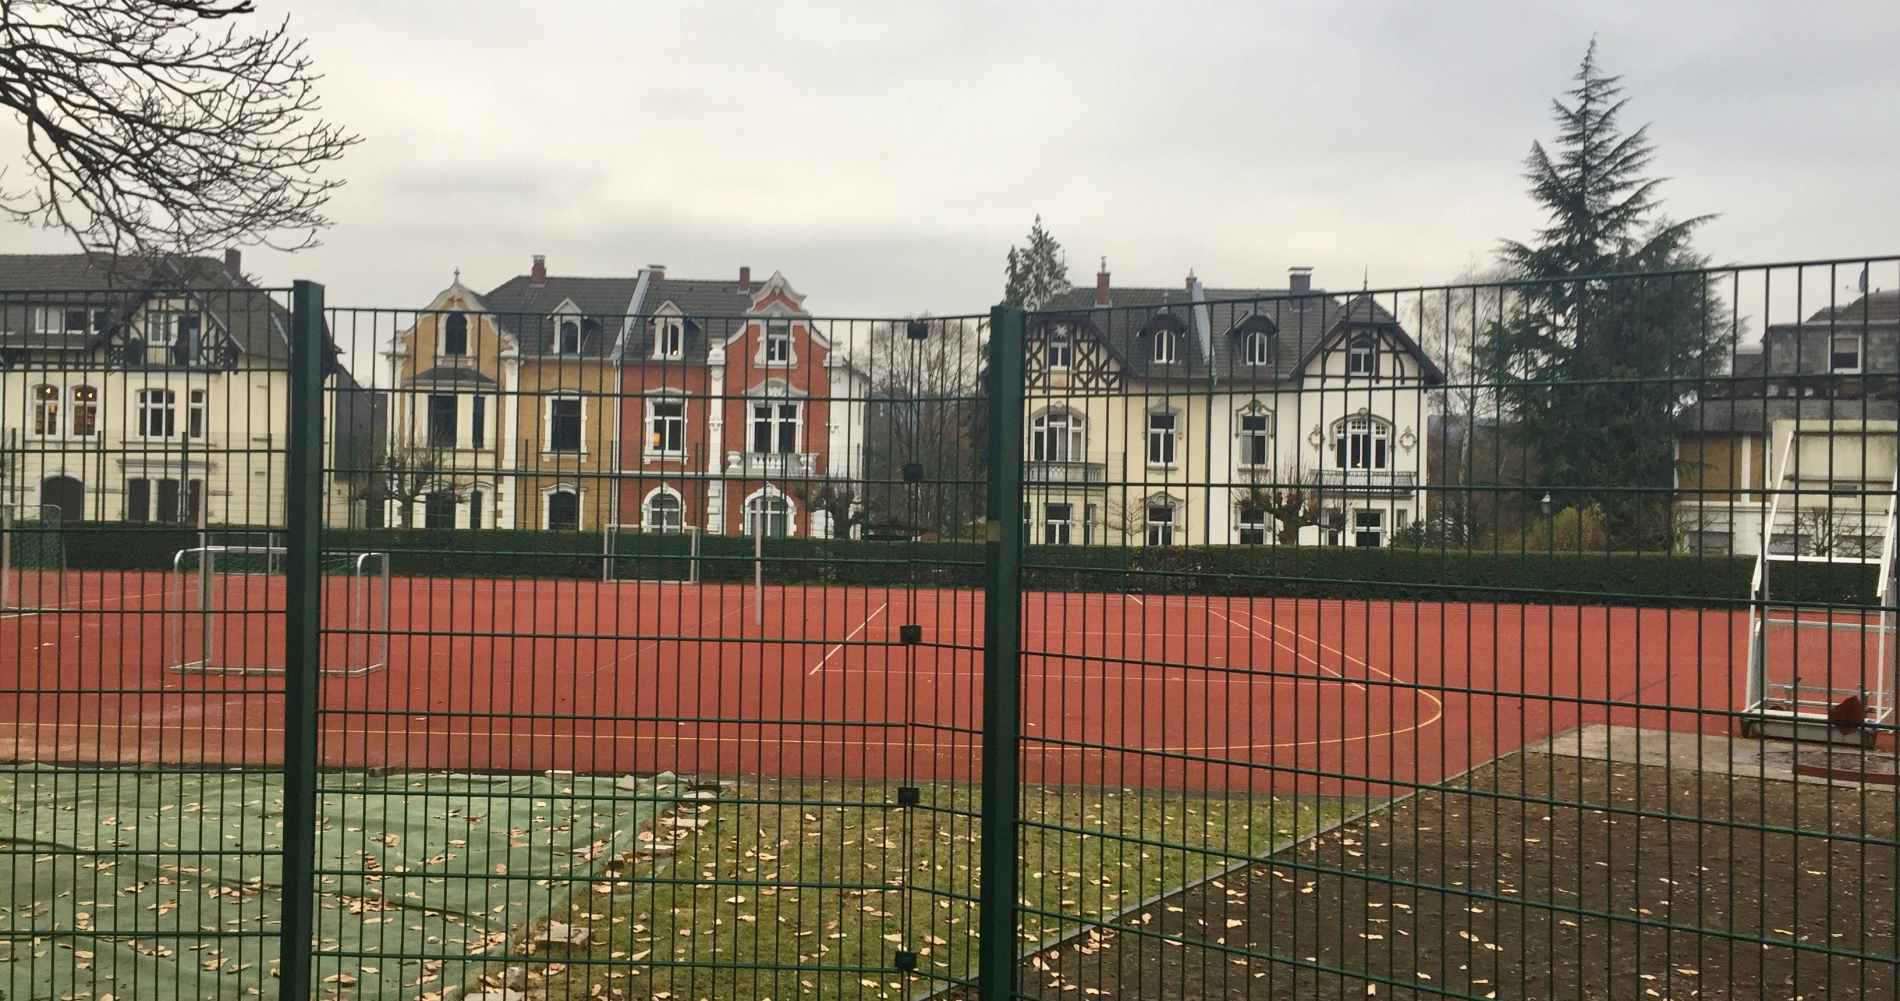 KÖNIGIN- SOPHIE-STRASSE: Sportplatz soll bebaut werden. Anwohner wollen das verhindern.